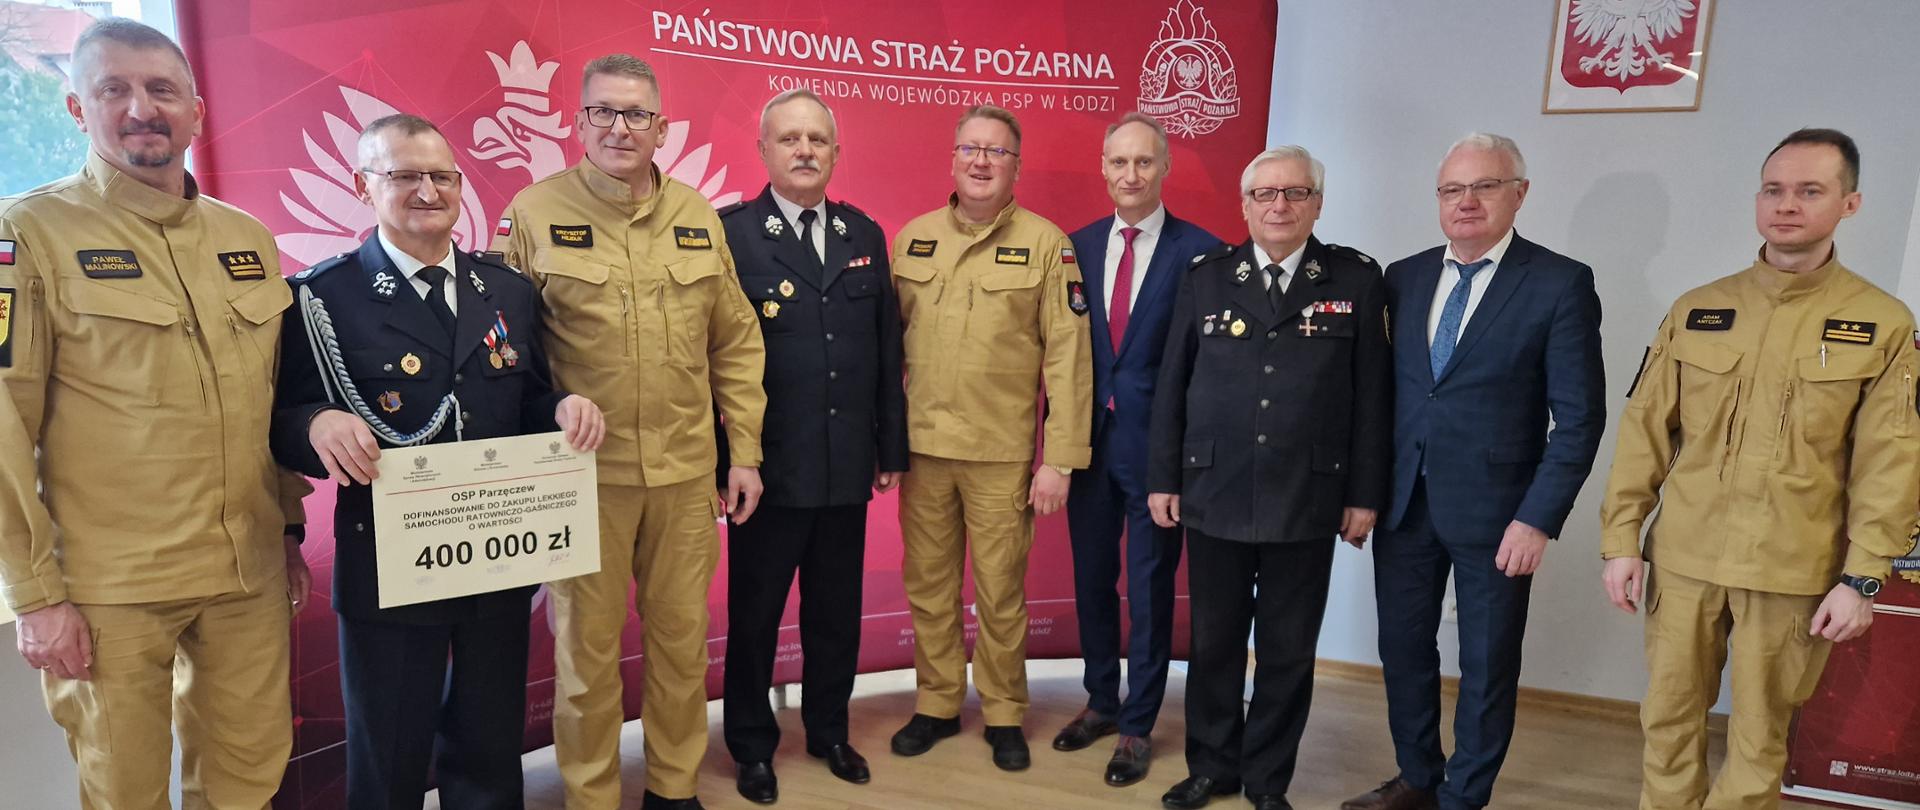 strażacy PSP, druhowie OSP, posłowie oraz przedstawiciele władz samorządowych pozują do zdjęcia na tle banneru komendy wojewódzkiej PSP w Łodzi